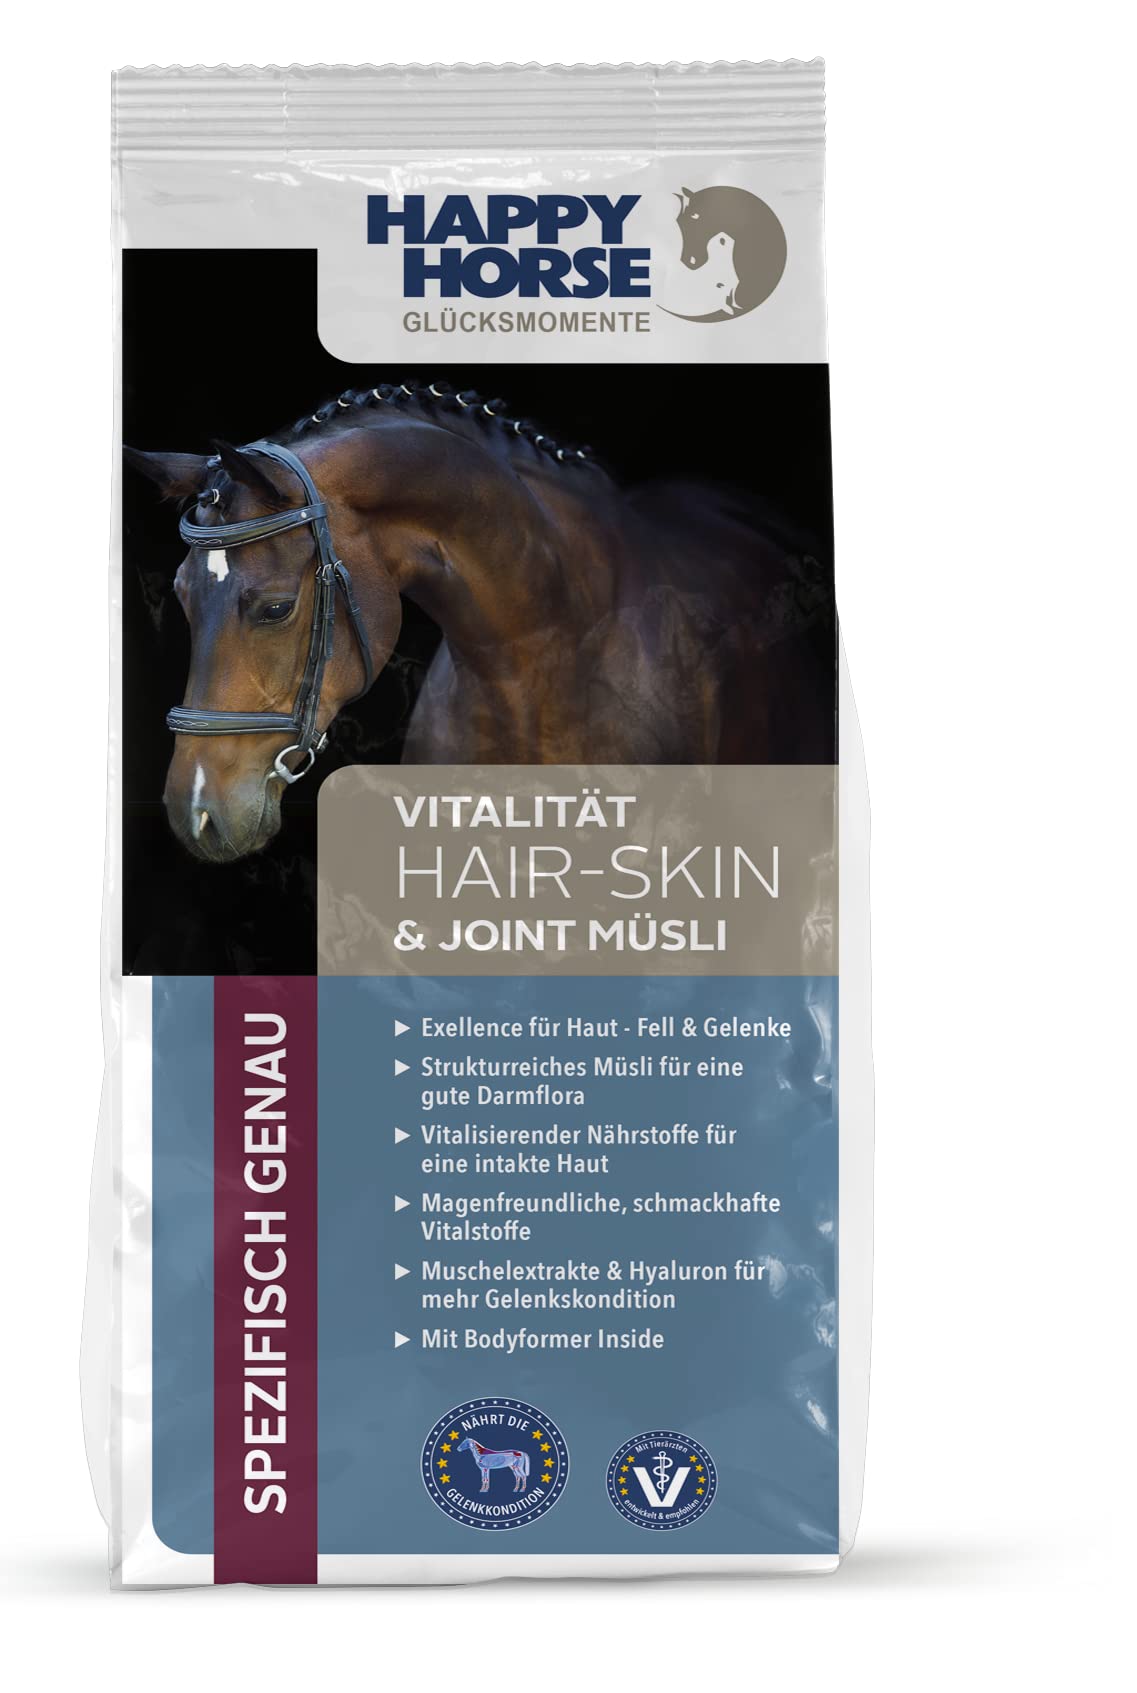 HAPPY HORSE Müsli 14kg für Haut, Fell & Gelenke deines Pferdes | Energieversorgung | Weidegras | Fermentgetreide | unterstützt Gelenkgesundheit | niedriger Zuckeranteil